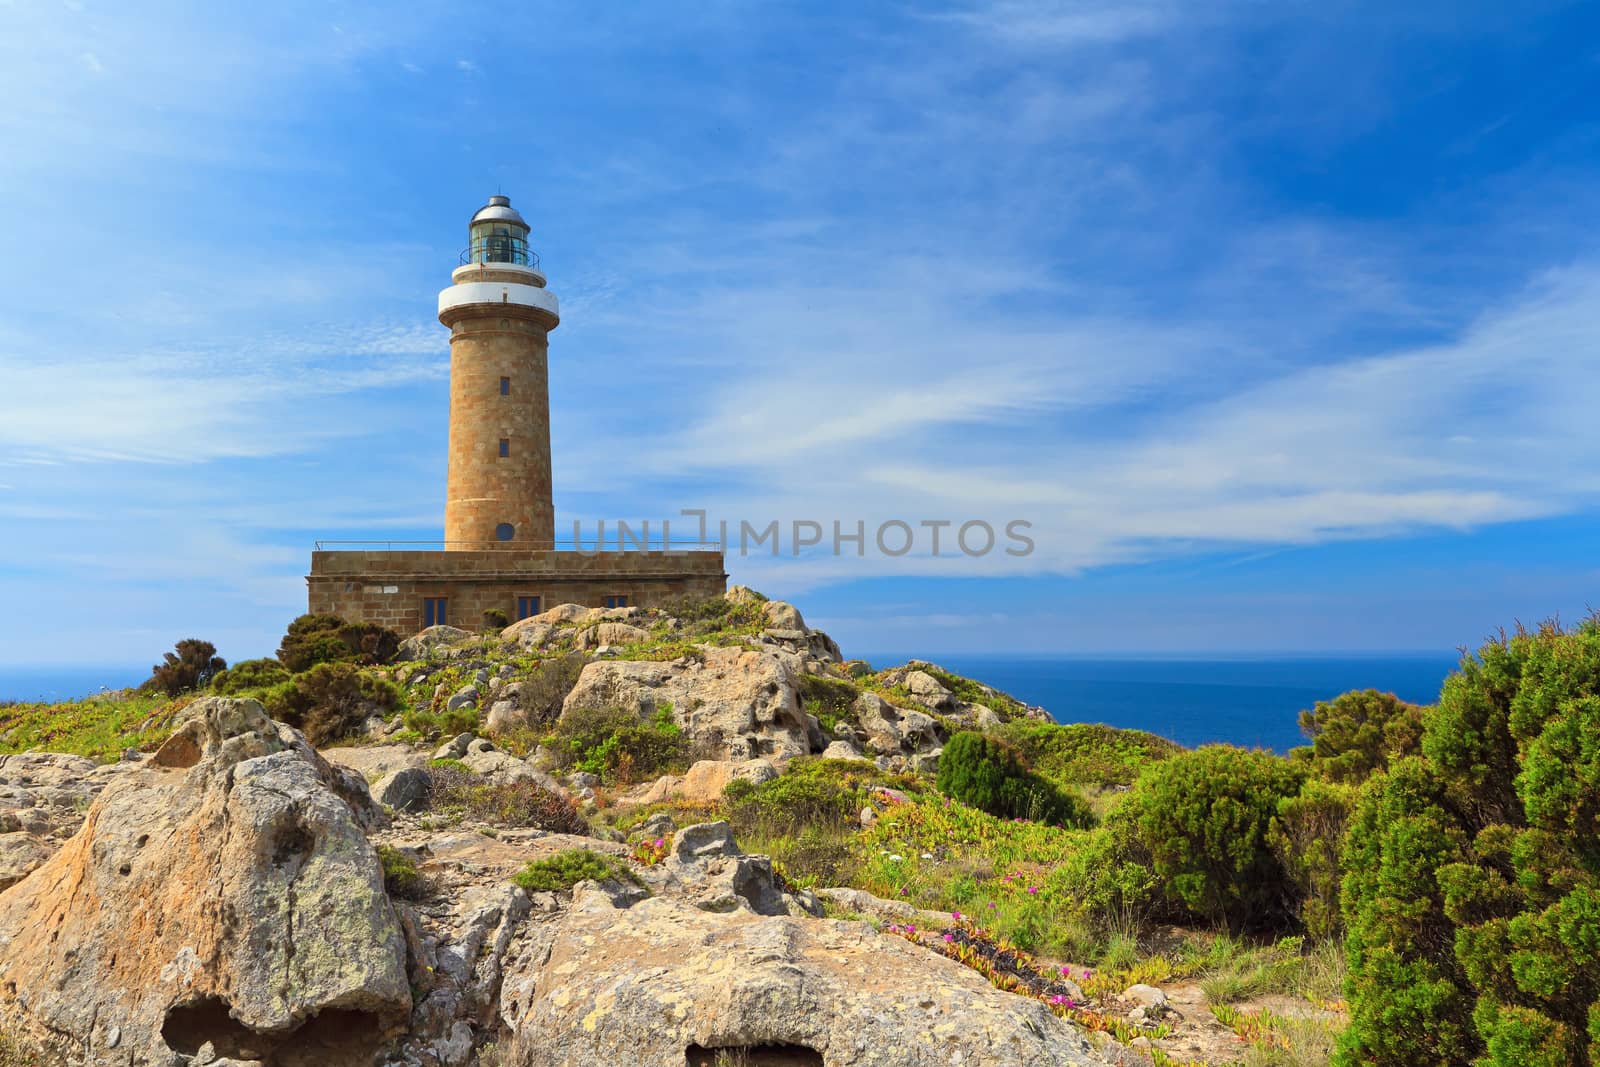 lighthouse in San pietro island, Carloforte, south west sardinia, Italy